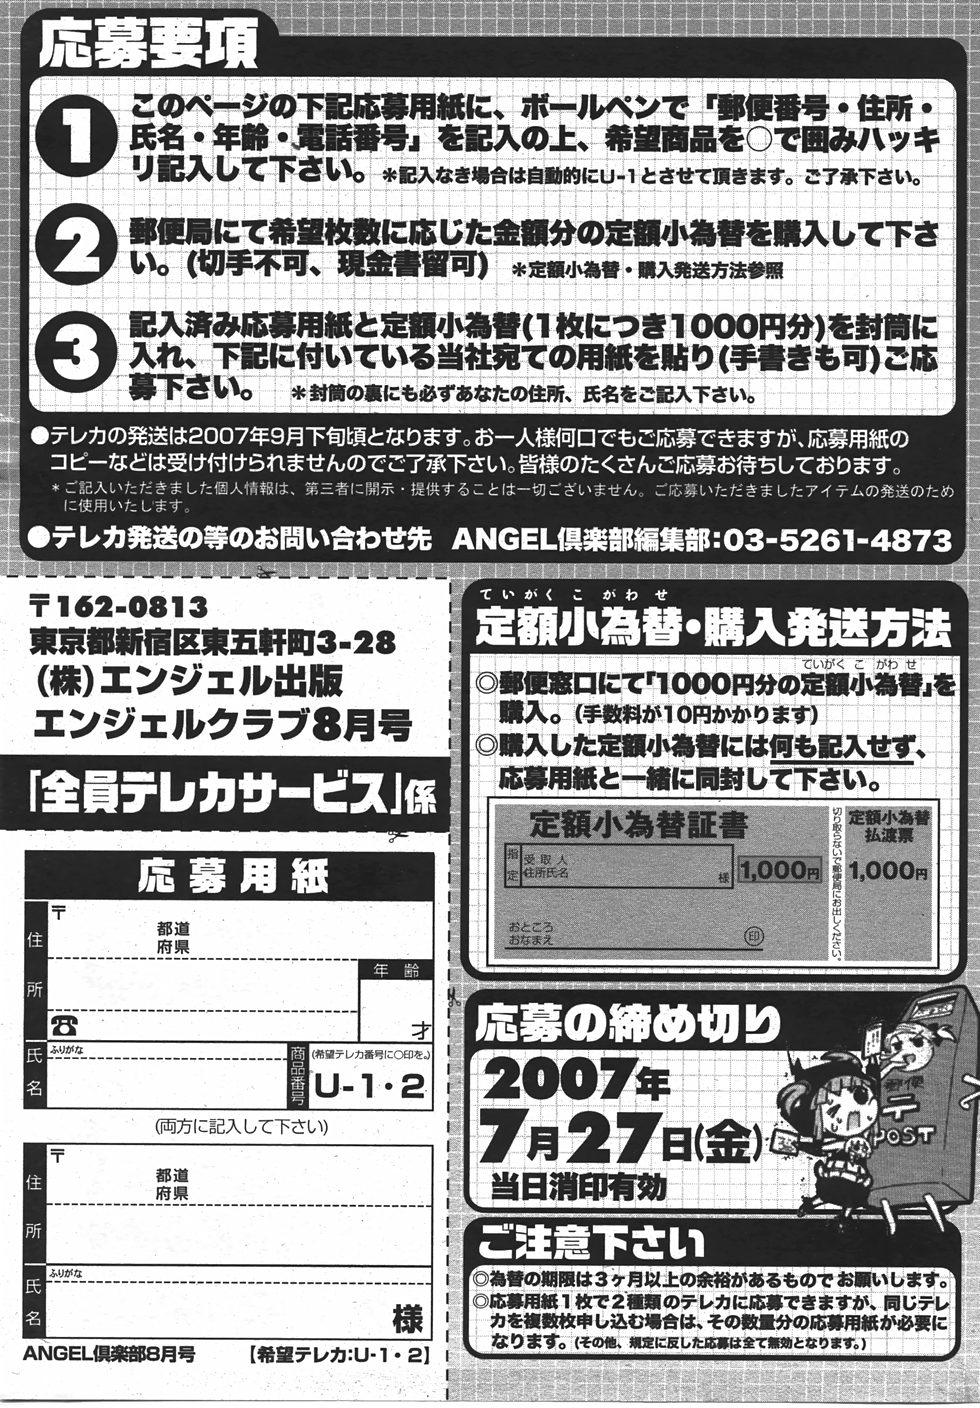 Angel Club 2007-08 198